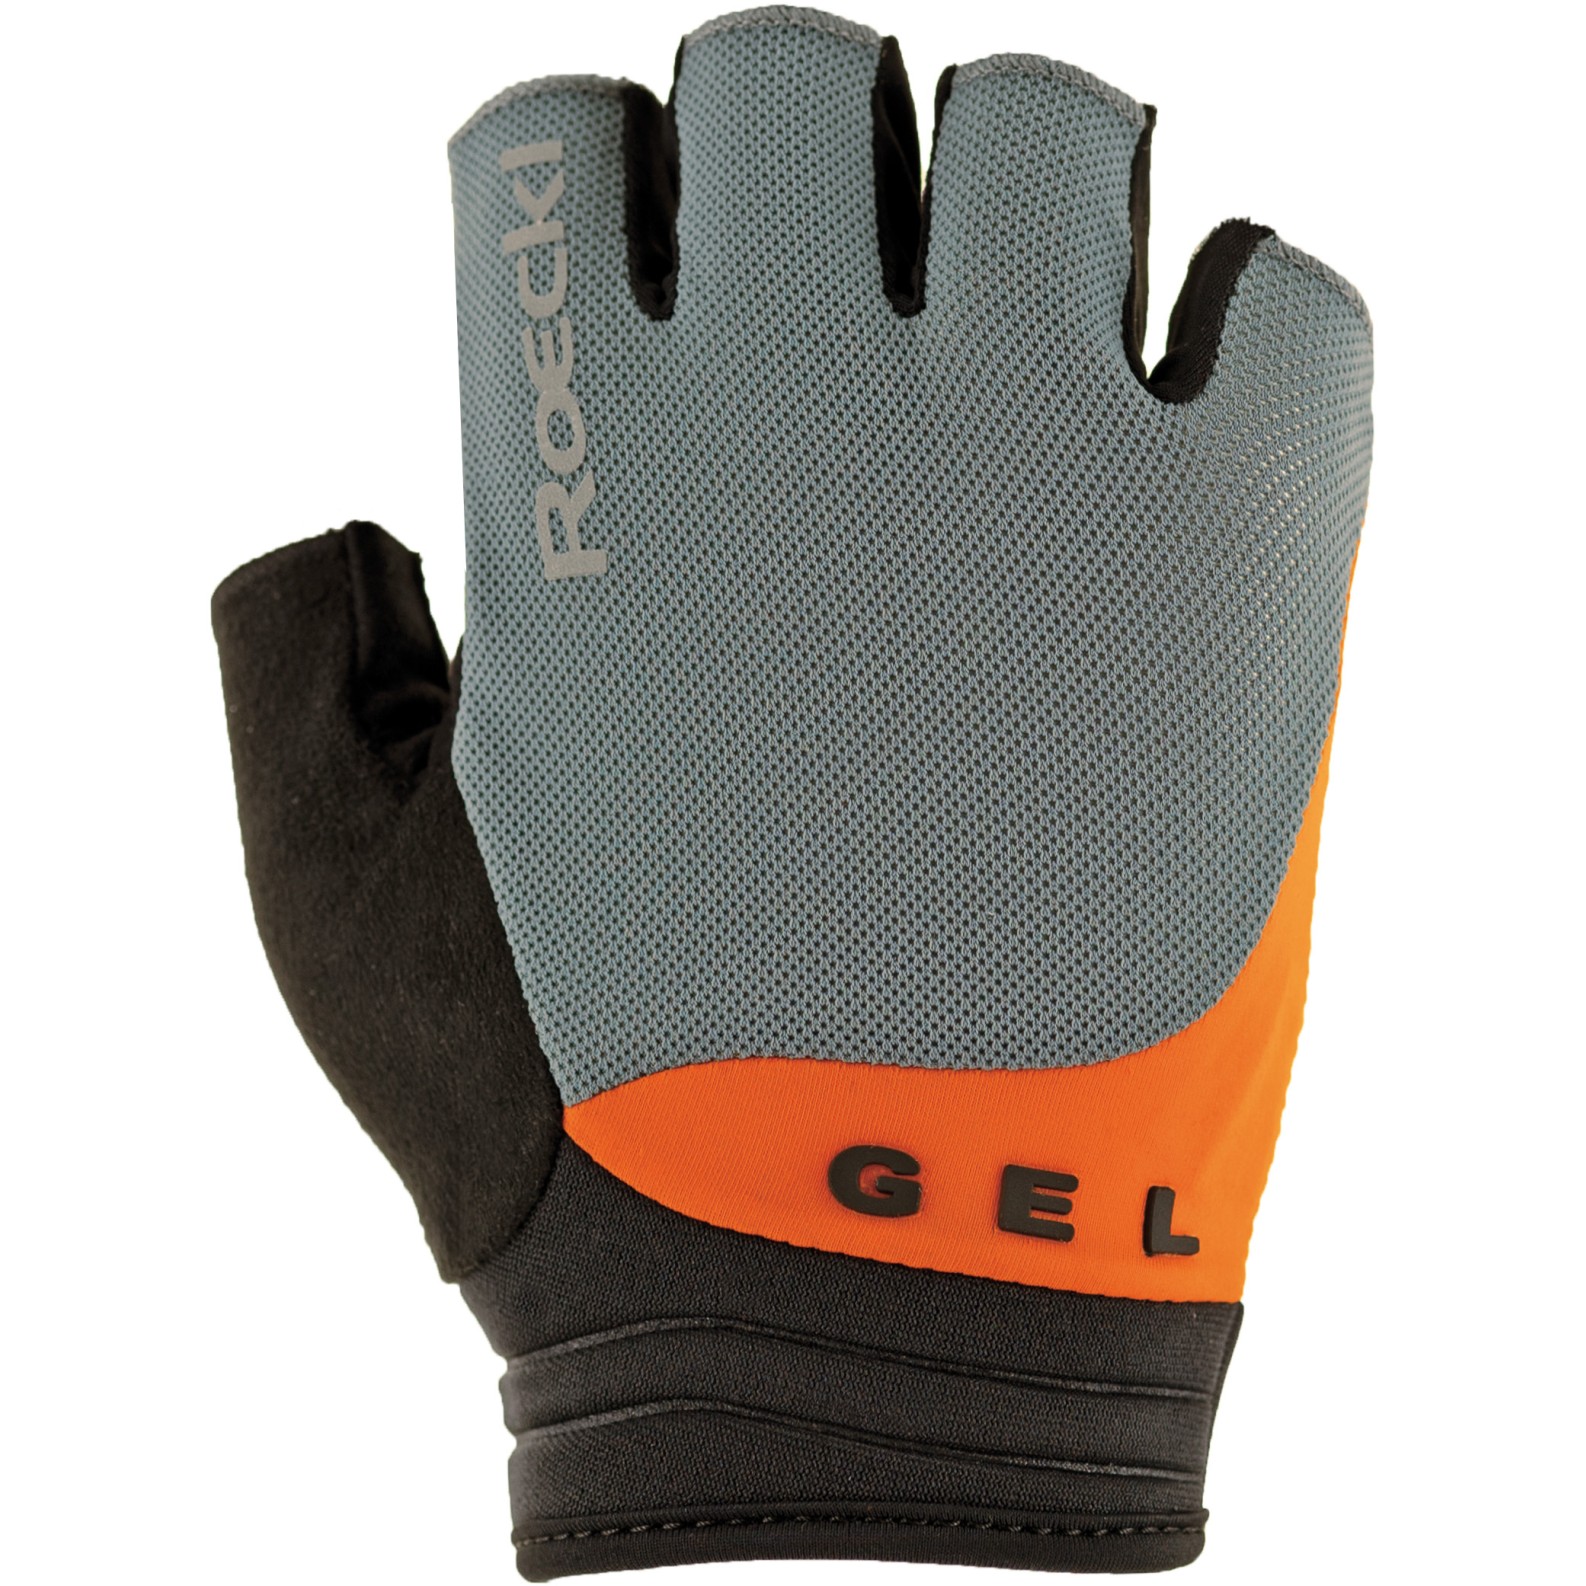 Productfoto van Roeckl Sports Itamos 2 Fietshandschoenen - hurricane grey/orange 8504